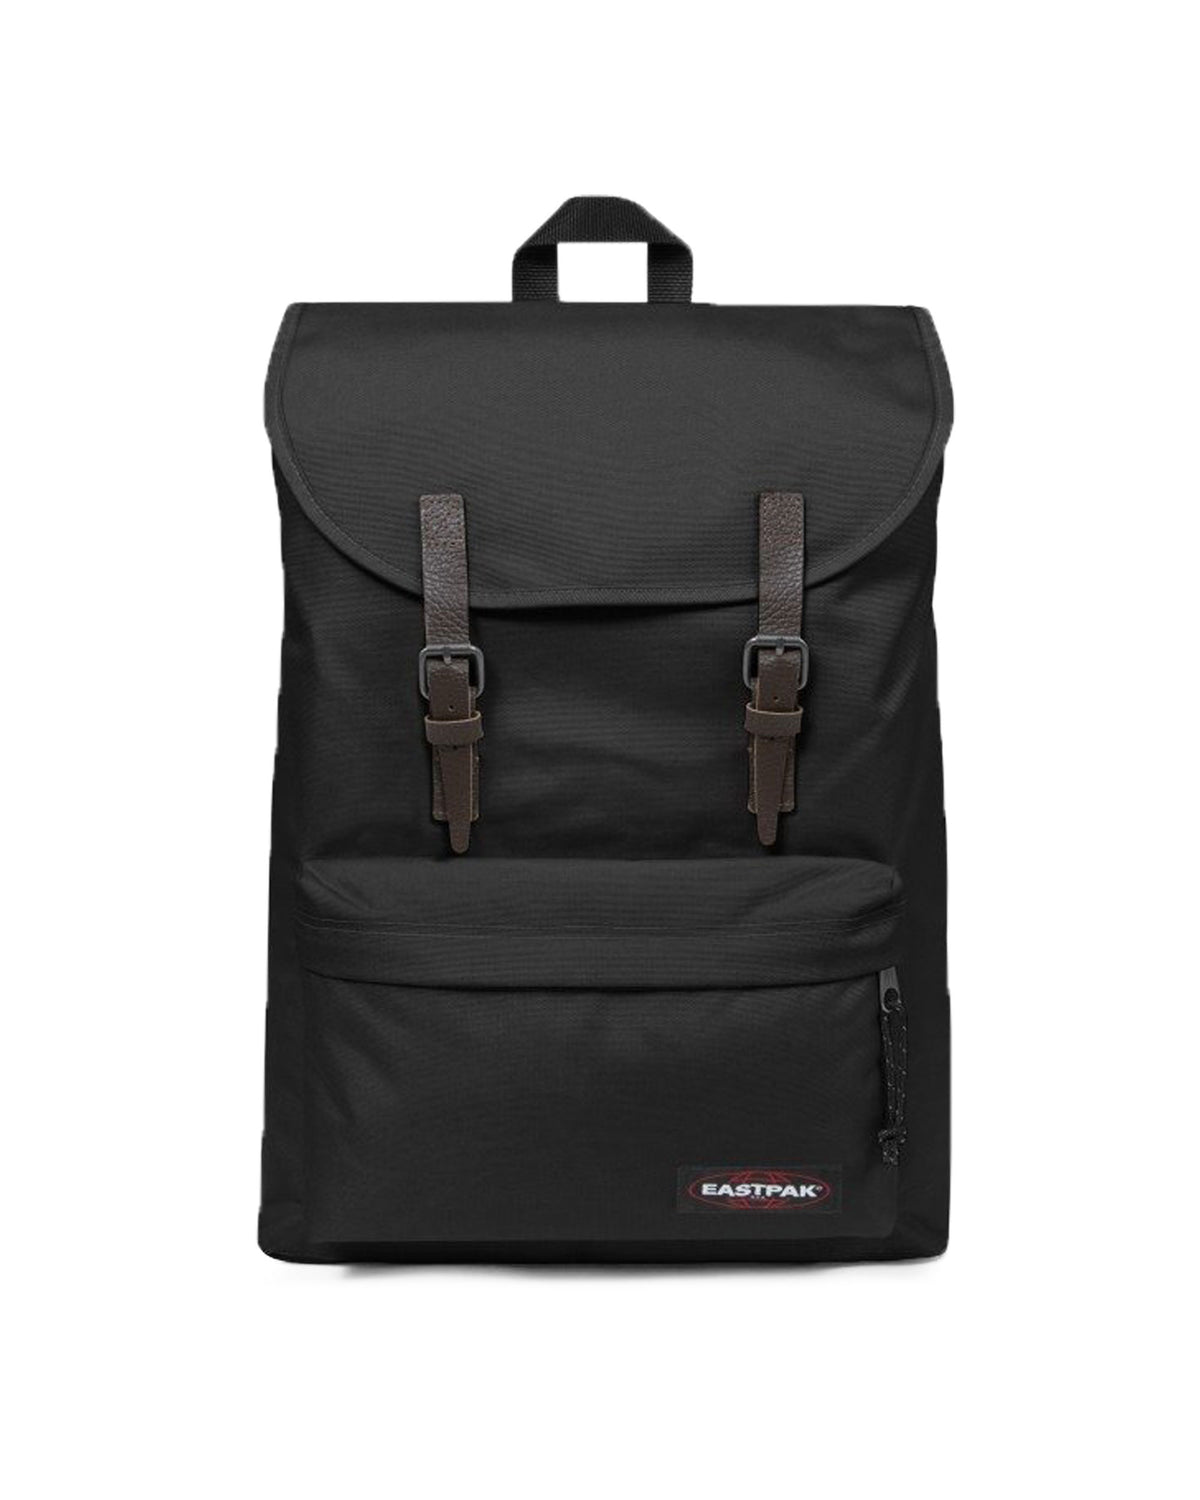 Backpack Eastpak London Black